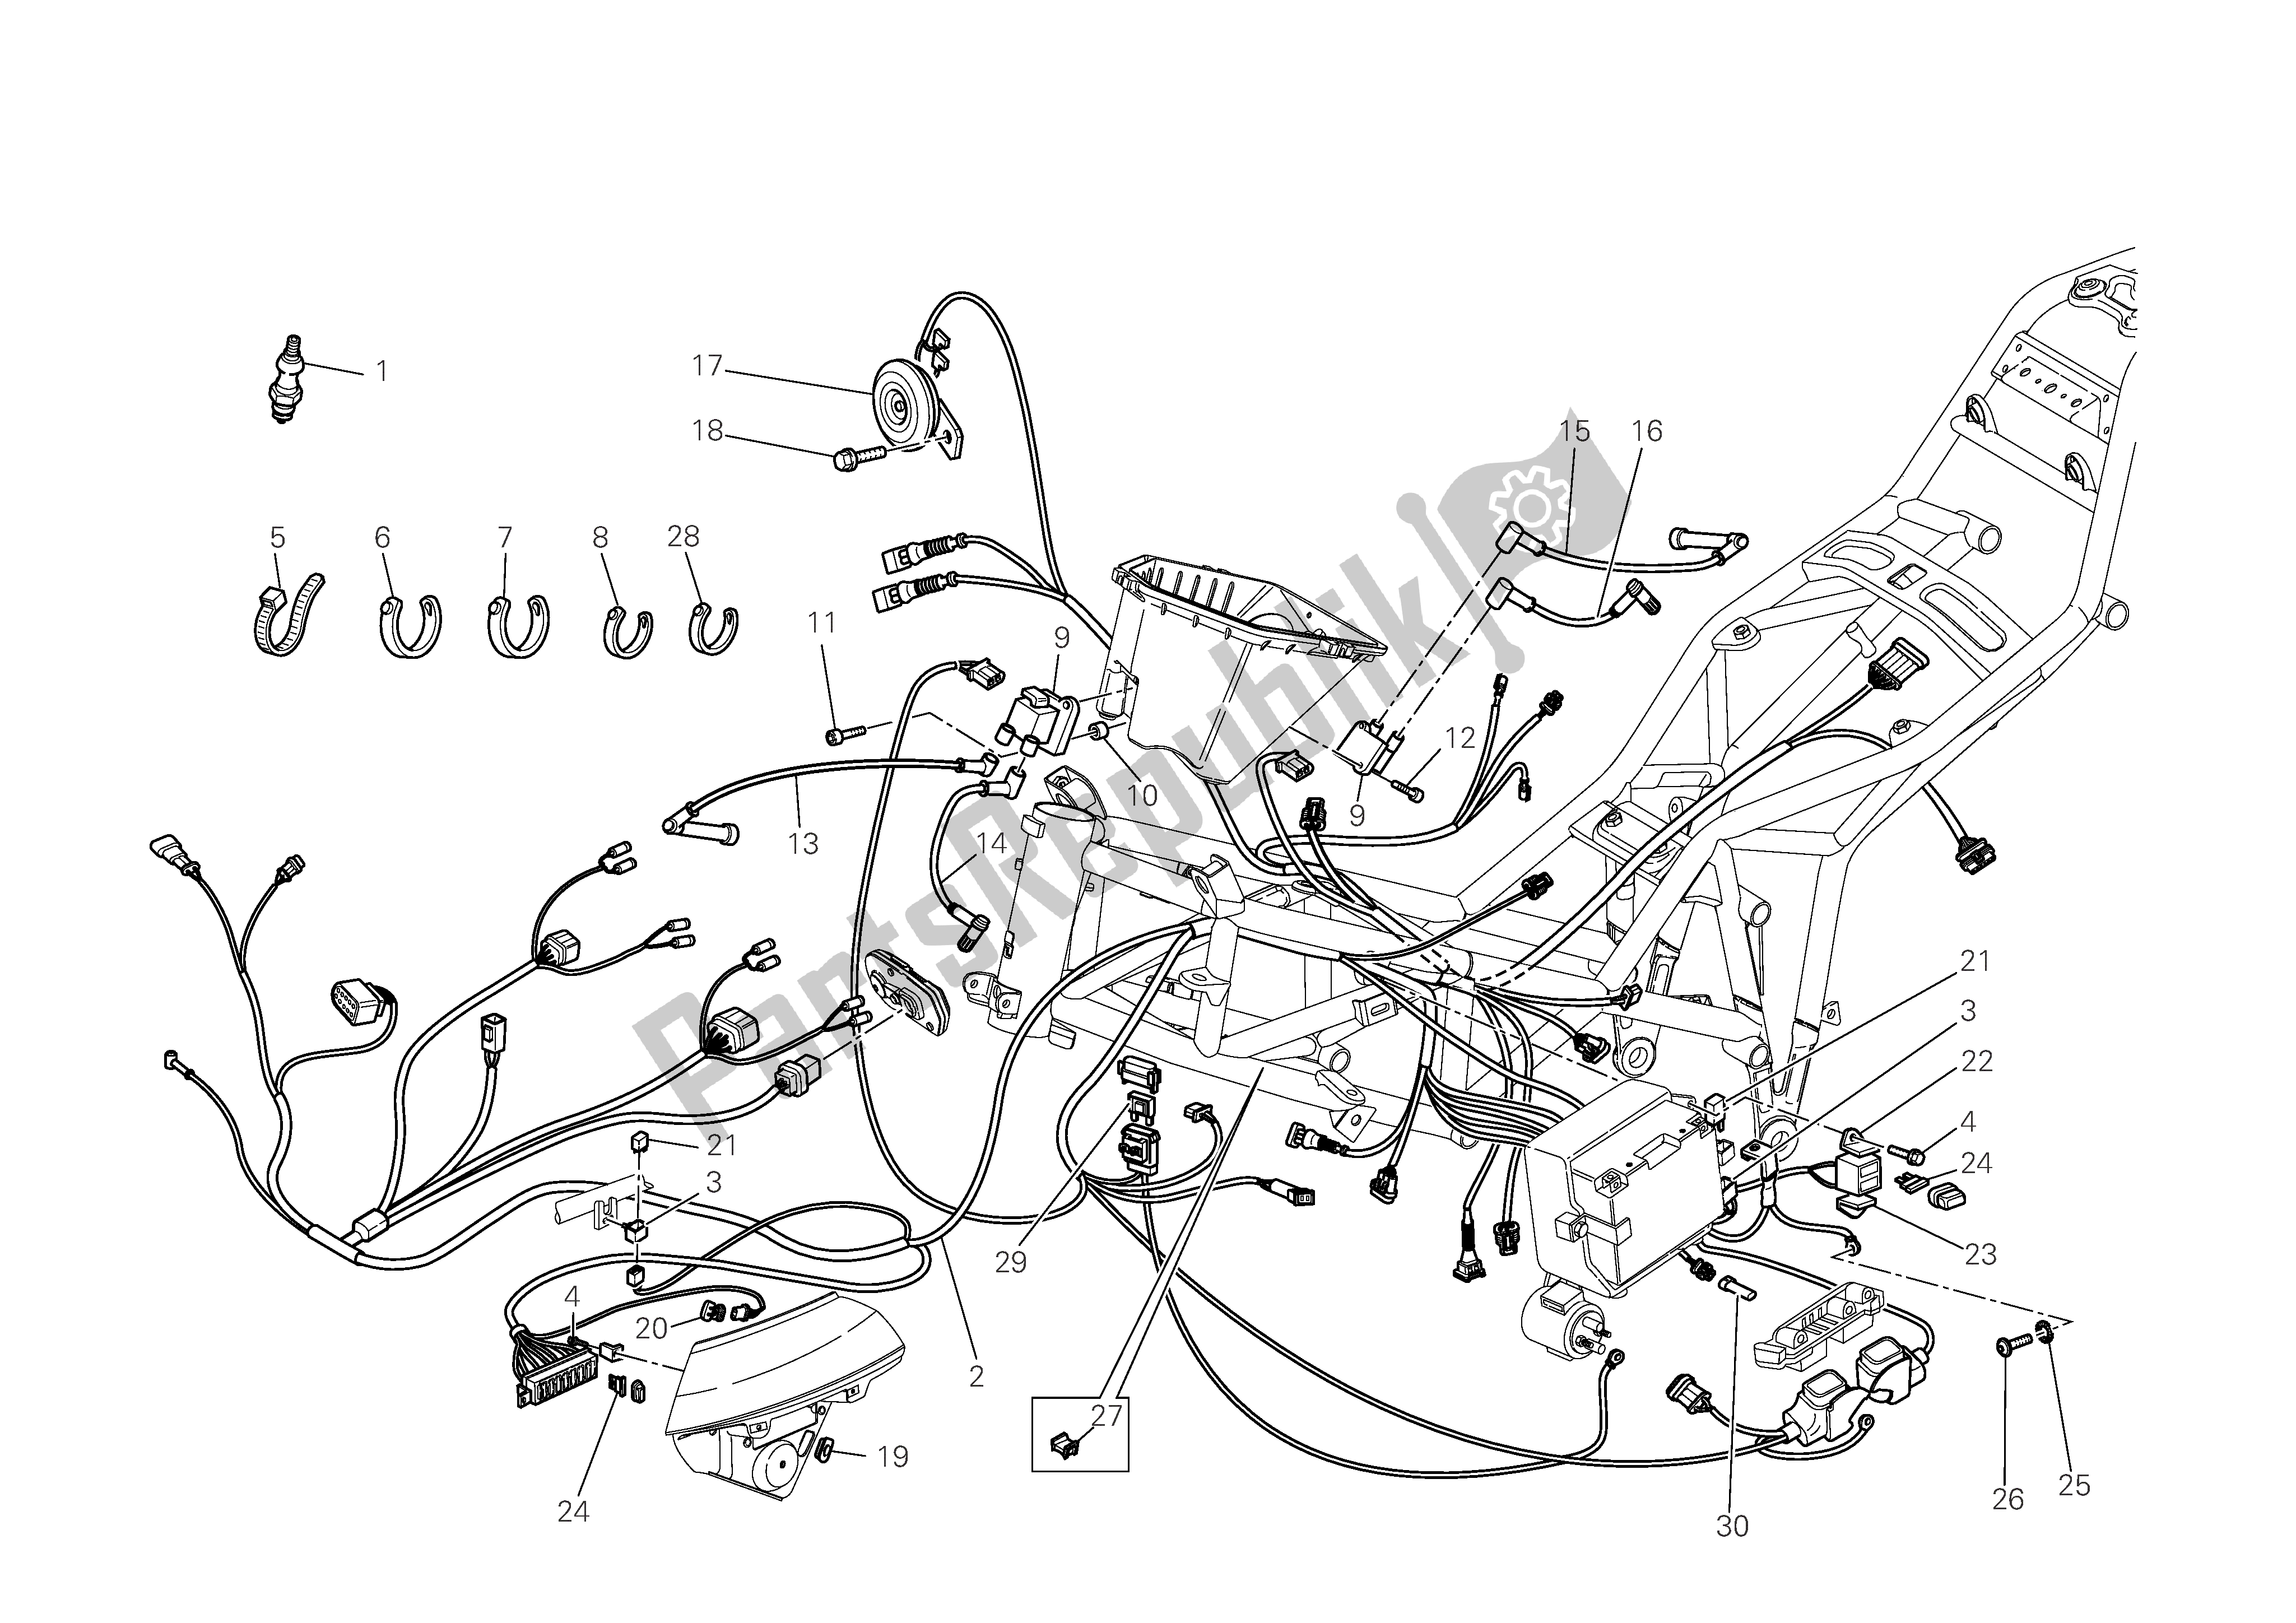 Tutte le parti per il Sistema Elettrico del Ducati Multistrada 1100 2009